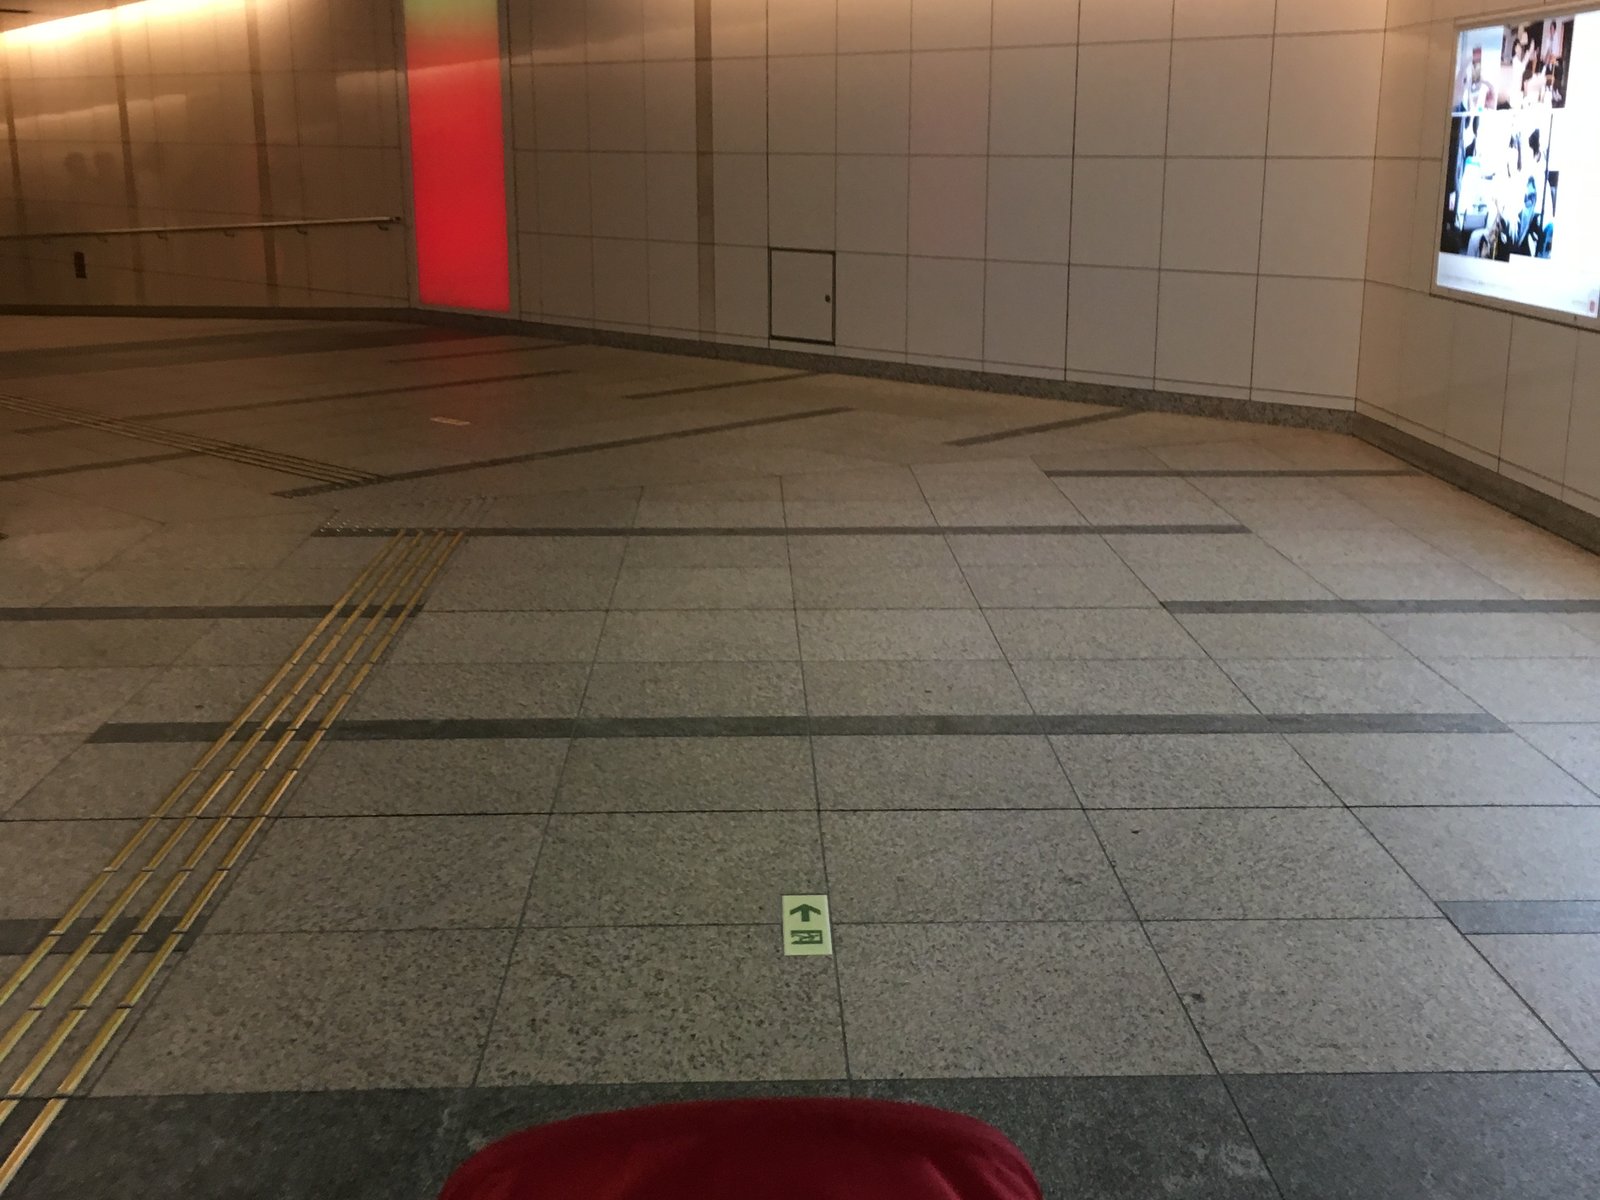 東京地下鉄株式会社 有楽町線豊洲駅